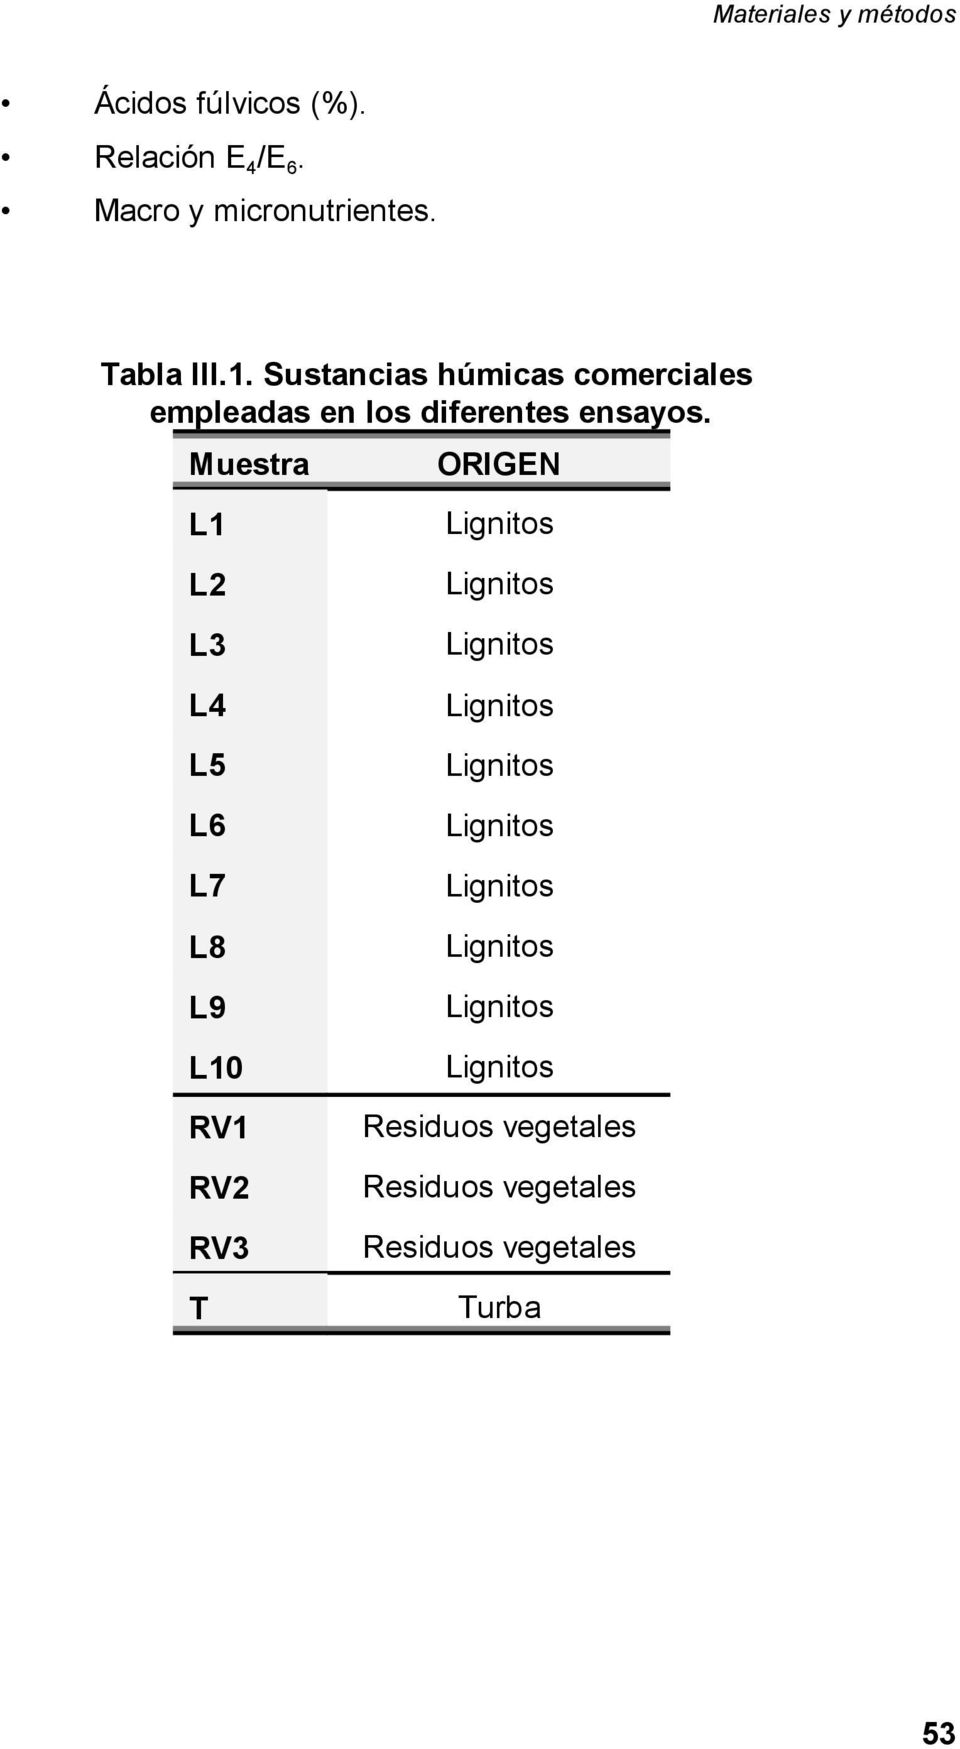 Muestra ORIGEN L1 L2 L3 Lignitos Lignitos Lignitos L4 L5 L6 L7 L8 L9 L10 RV1 RV2 RV3 T